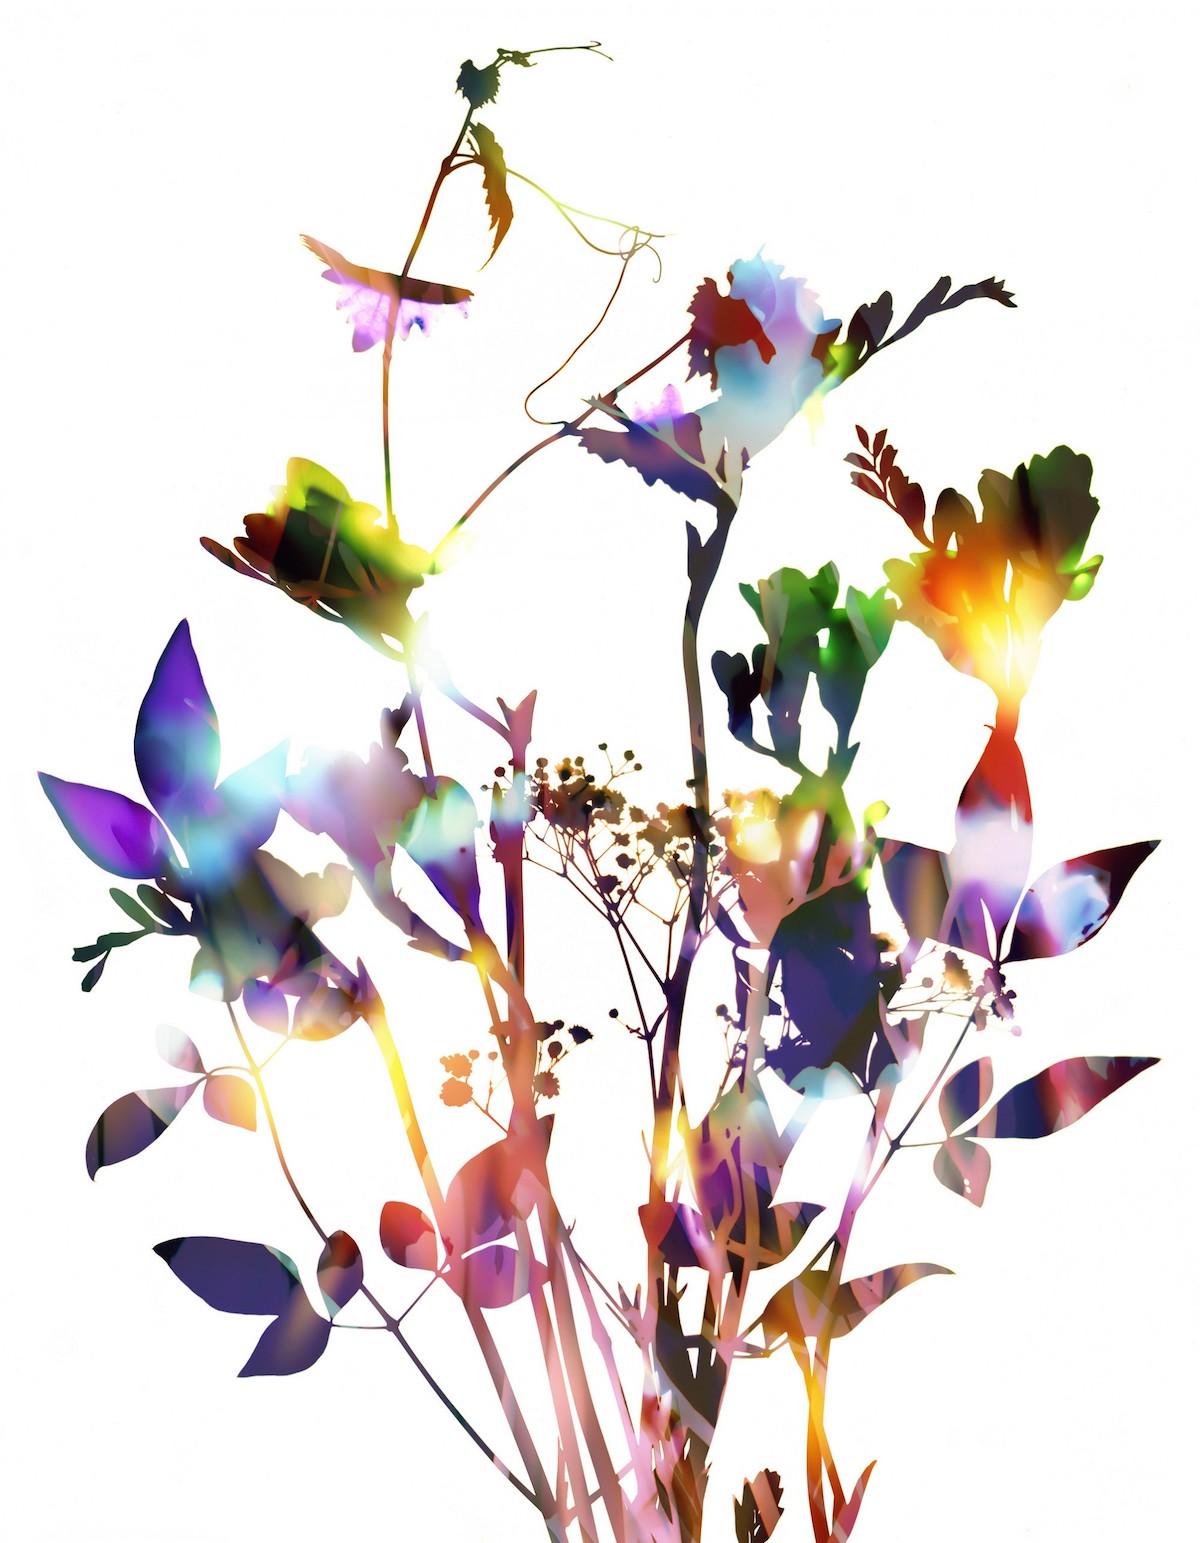 GENTLE SPIRIT N°11, Allan Forsyth, impression en édition limitée, art floral